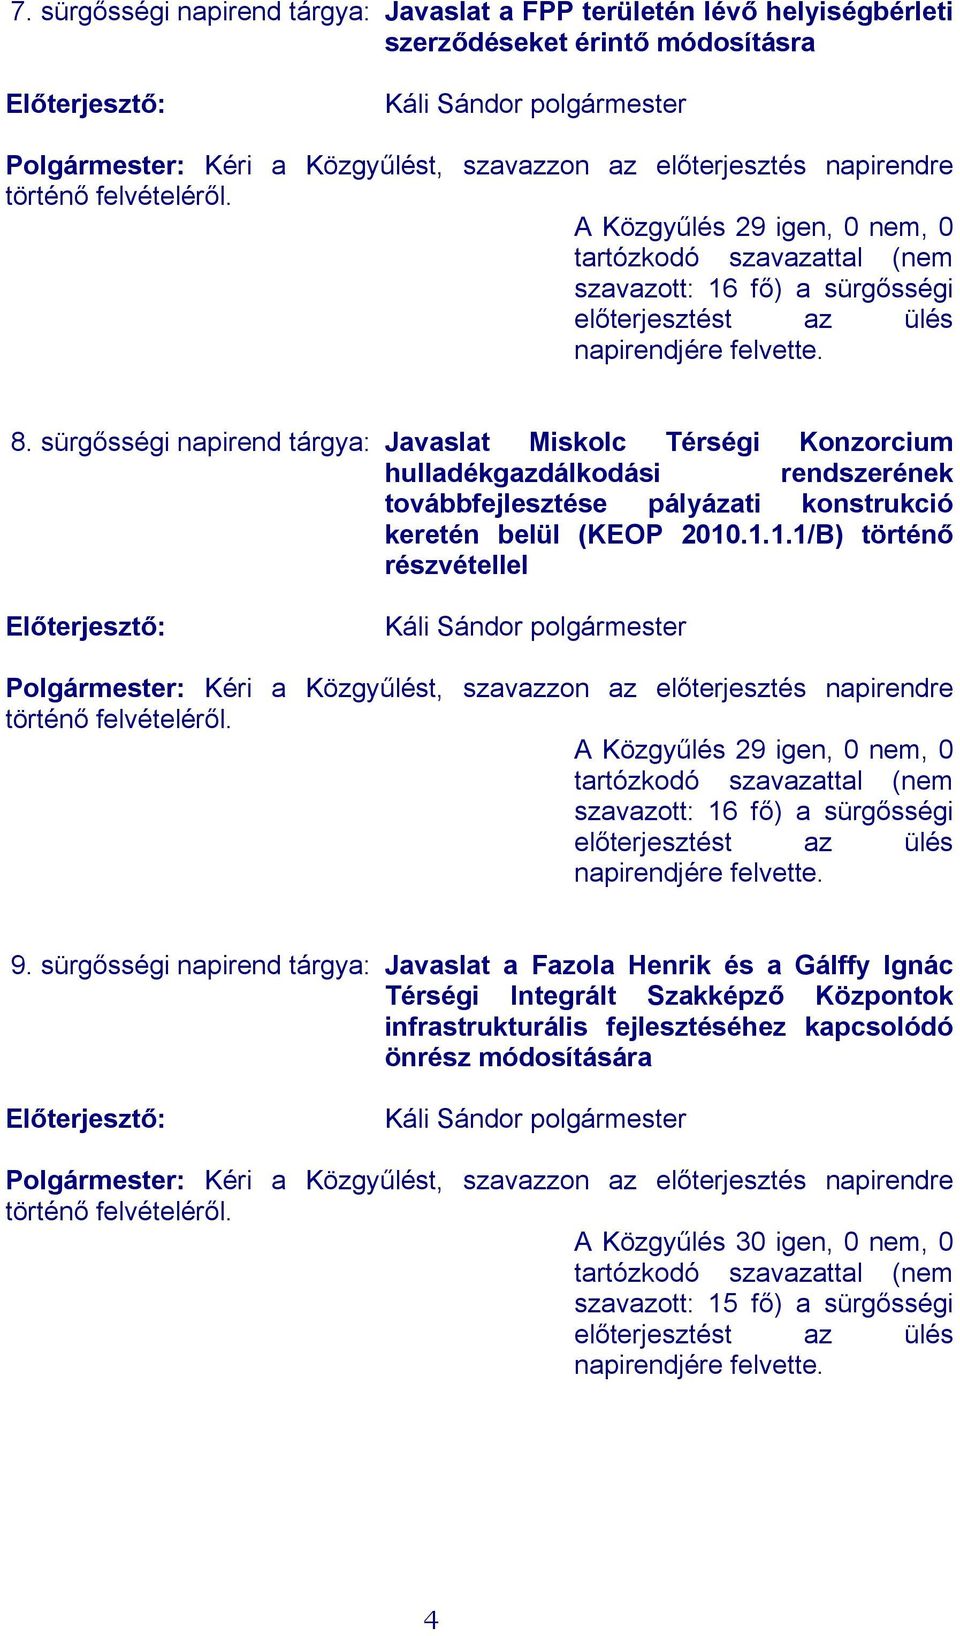 sürgősségi napirend tárgya: Javaslat Miskolc Térségi Konzorcium hulladékgazdálkodási rendszerének továbbfejlesztése pályázati konstrukció keretén belül (KEOP 2010